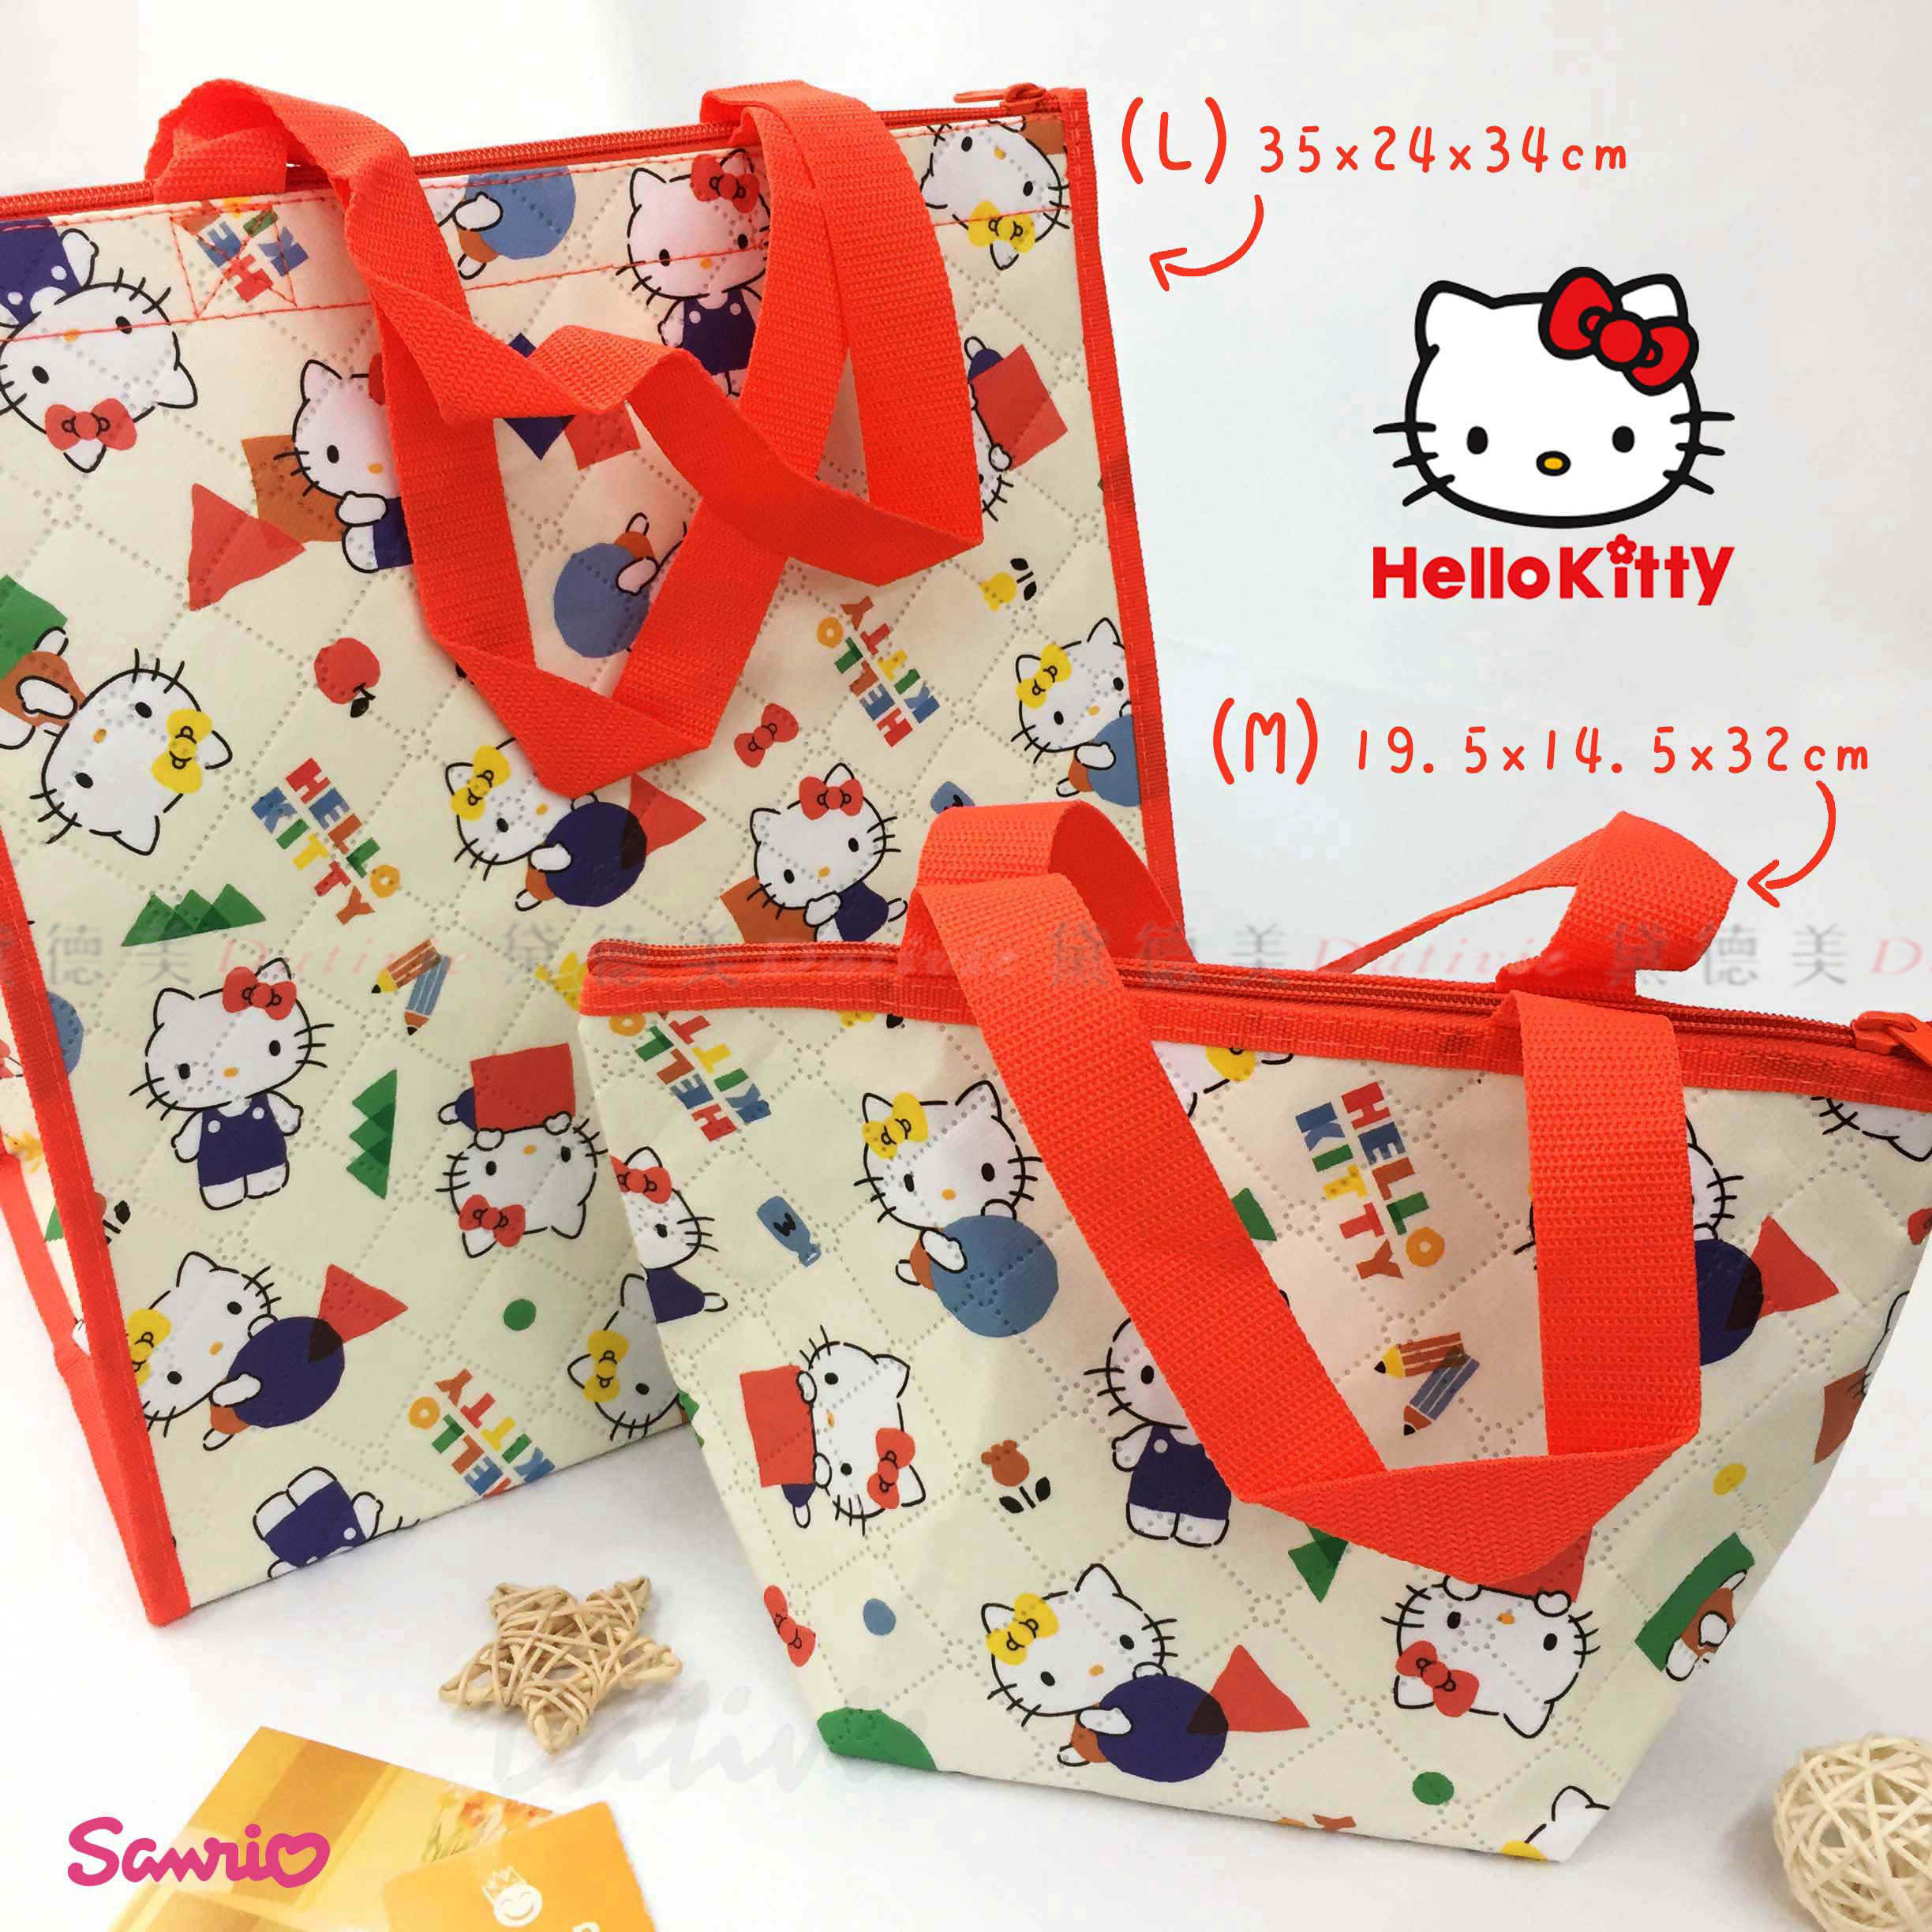 購物保冷袋-Hello Kitty 三麗鷗 Sanrio 正版授權